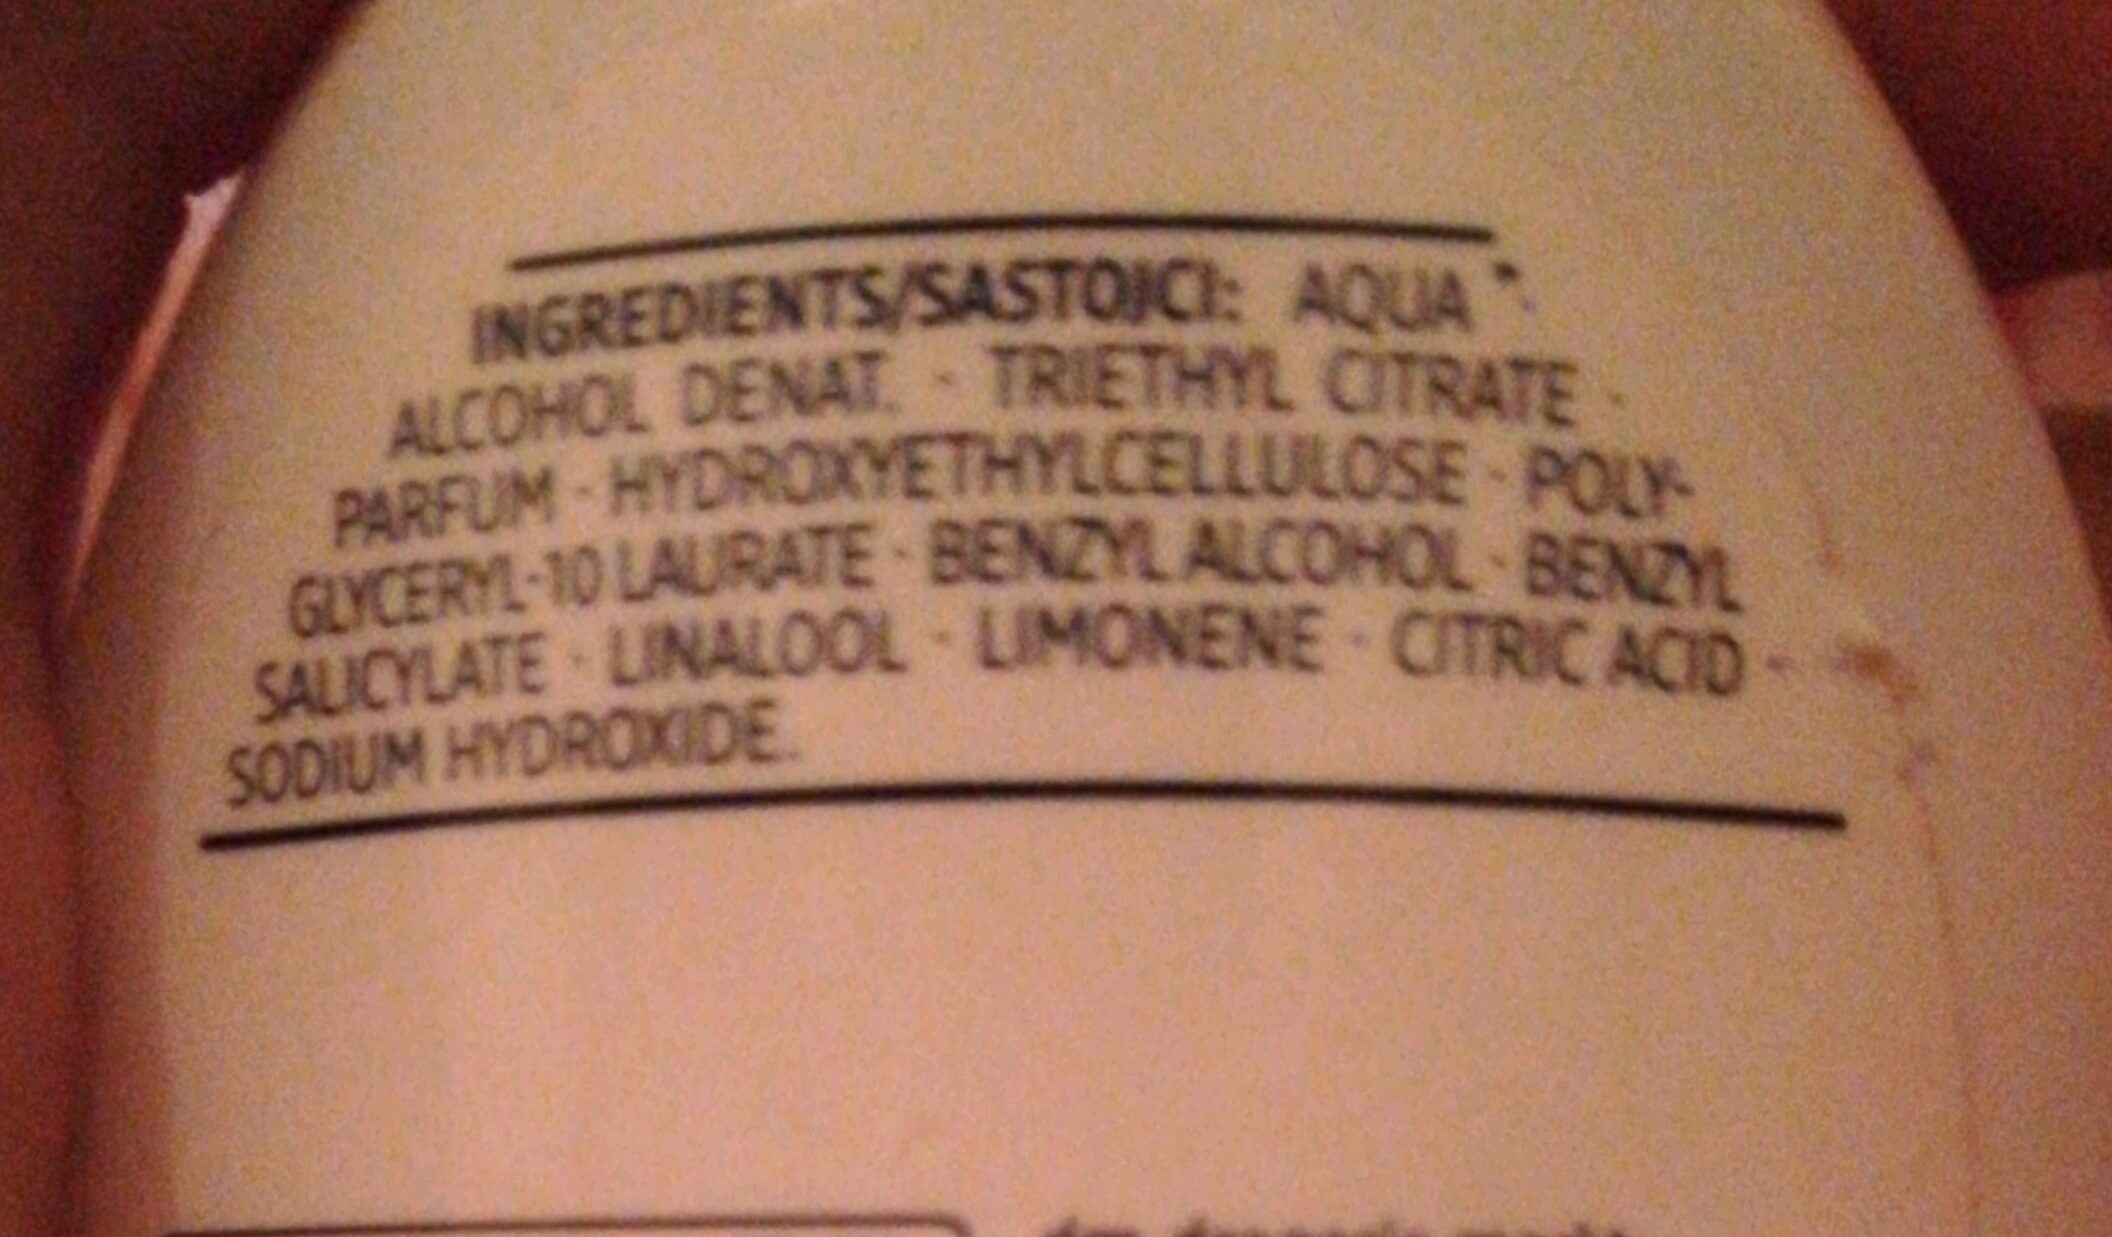 deodorant - Ingredients - fr